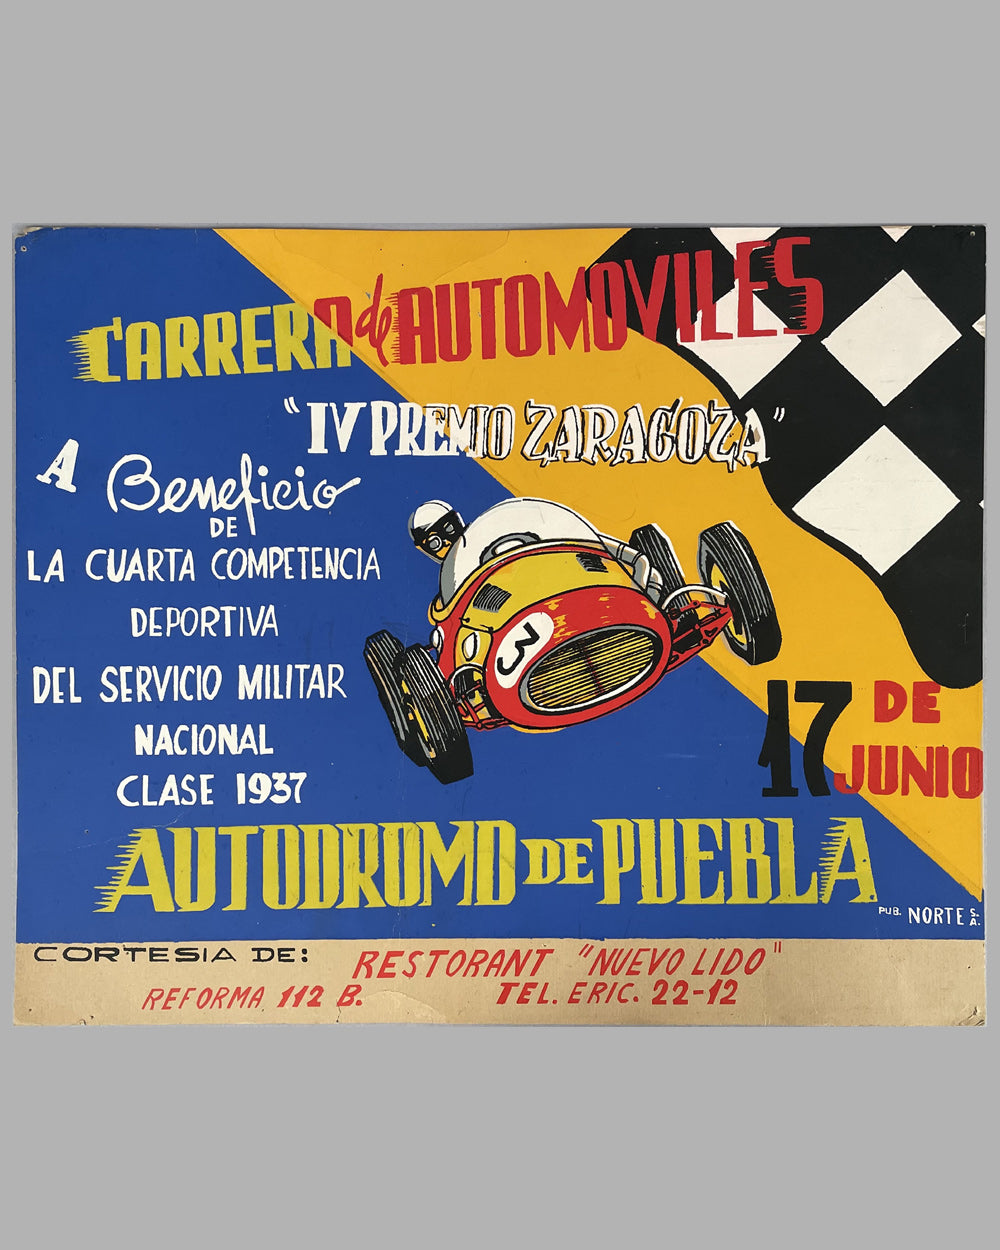 1951 Carrera de Automoviles "lV Grand Premio Zaragoza" original event poster